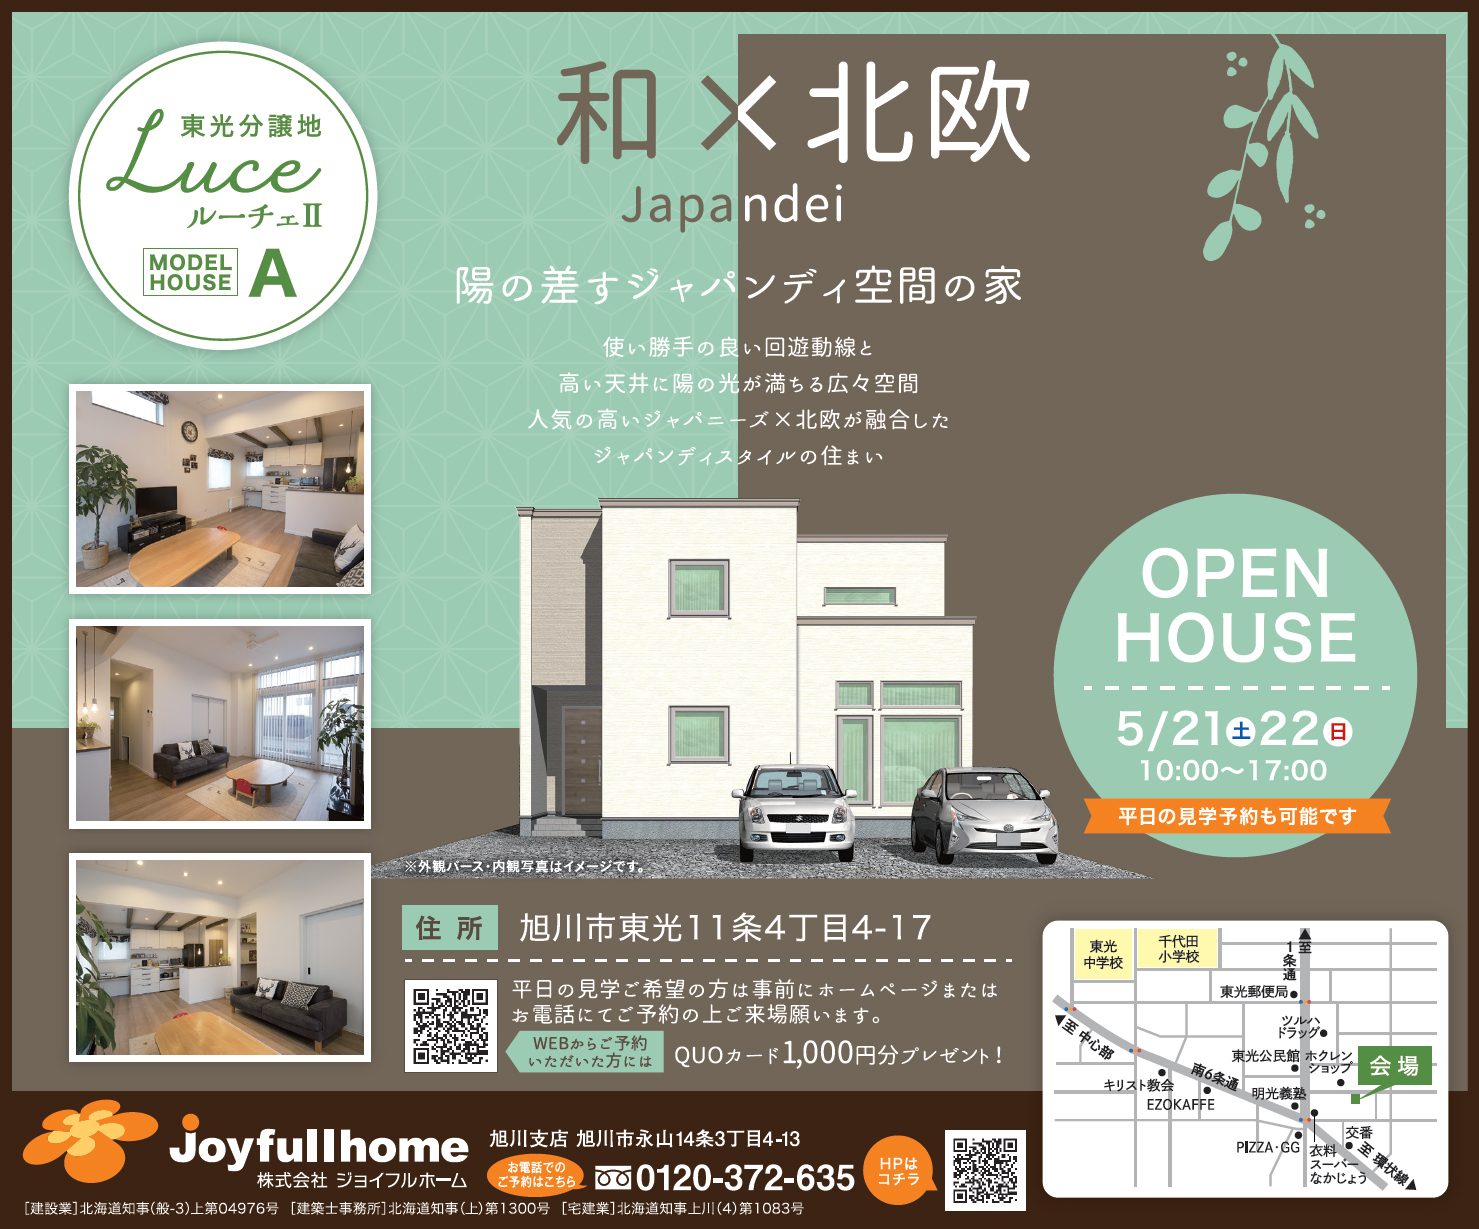 R040513-220517_ラ_シ゛ョイフルホーム様_WEB-北海道広告